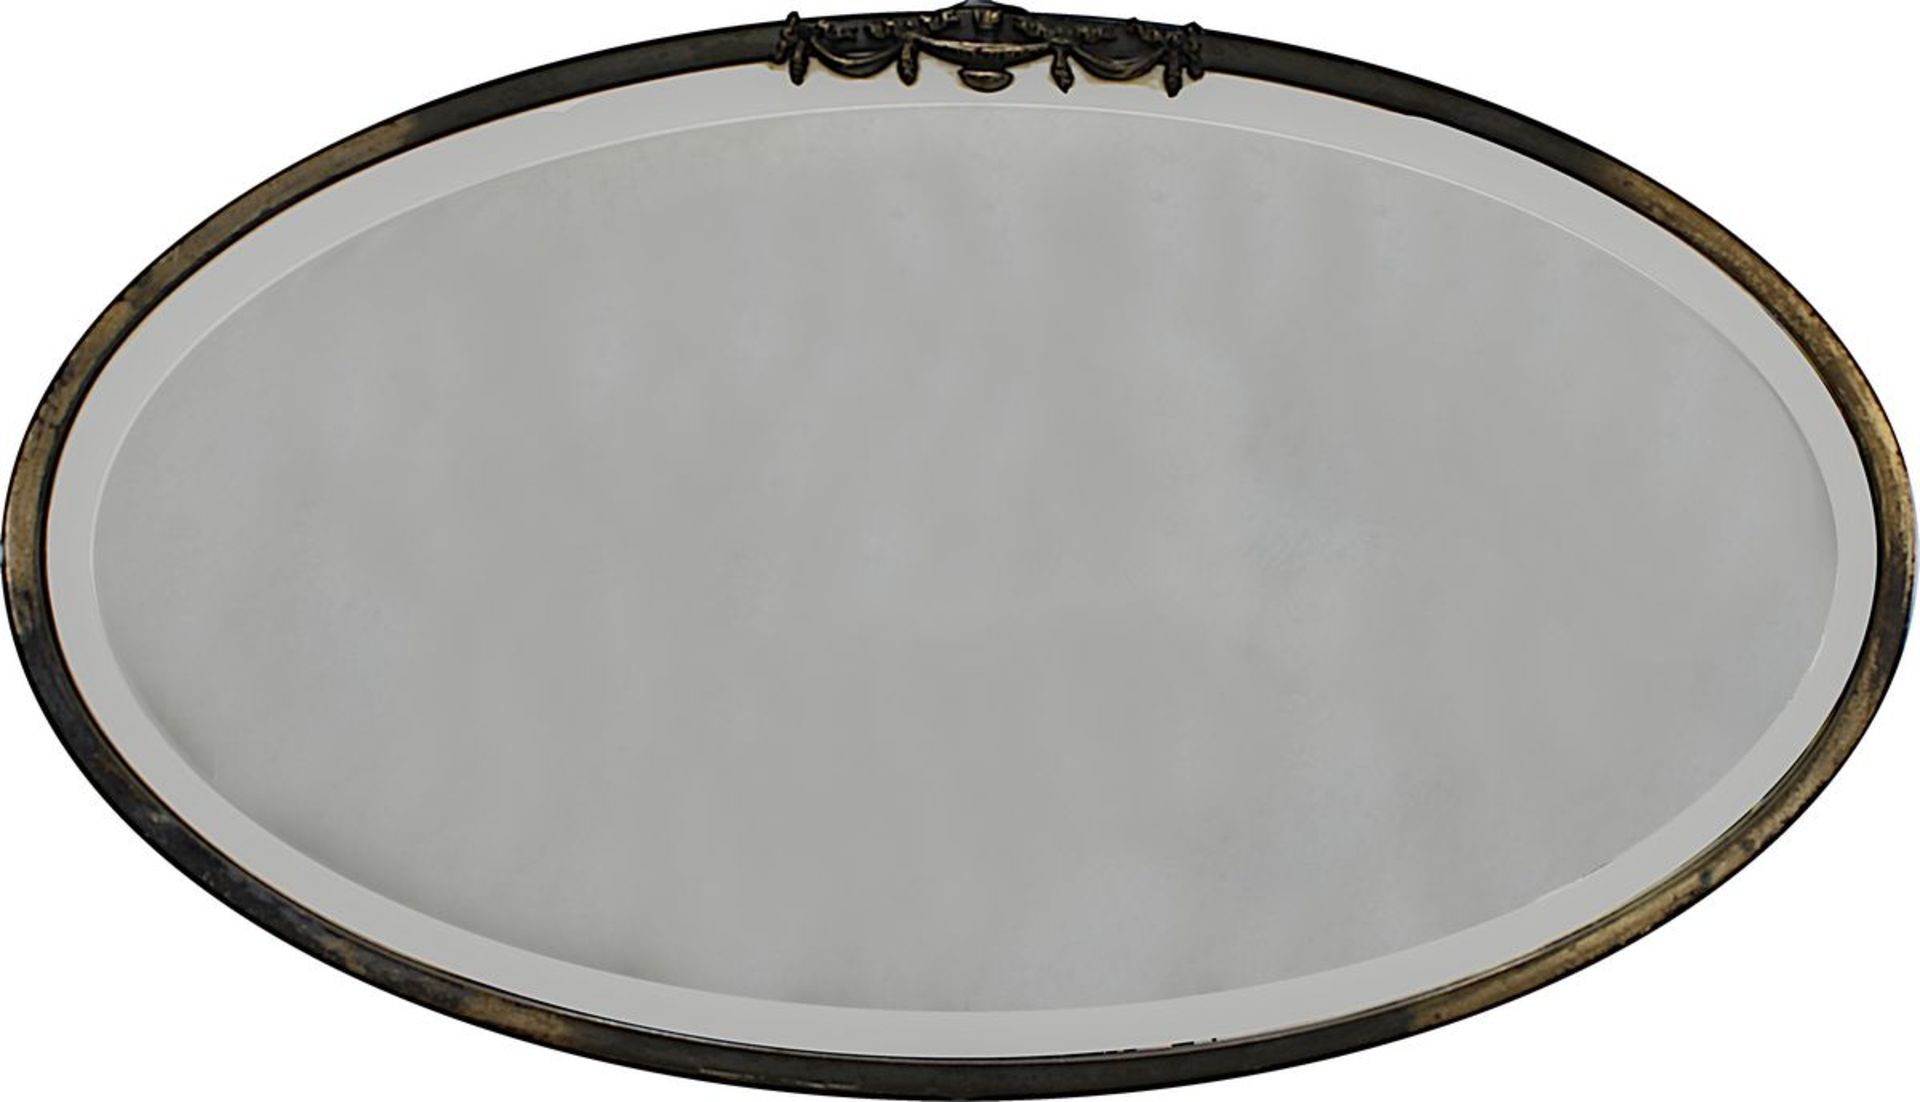 Ovaler Spiegel um 1920/30, schlichter, glatter Messingrahmen, am oberen Rand mit appliziertem